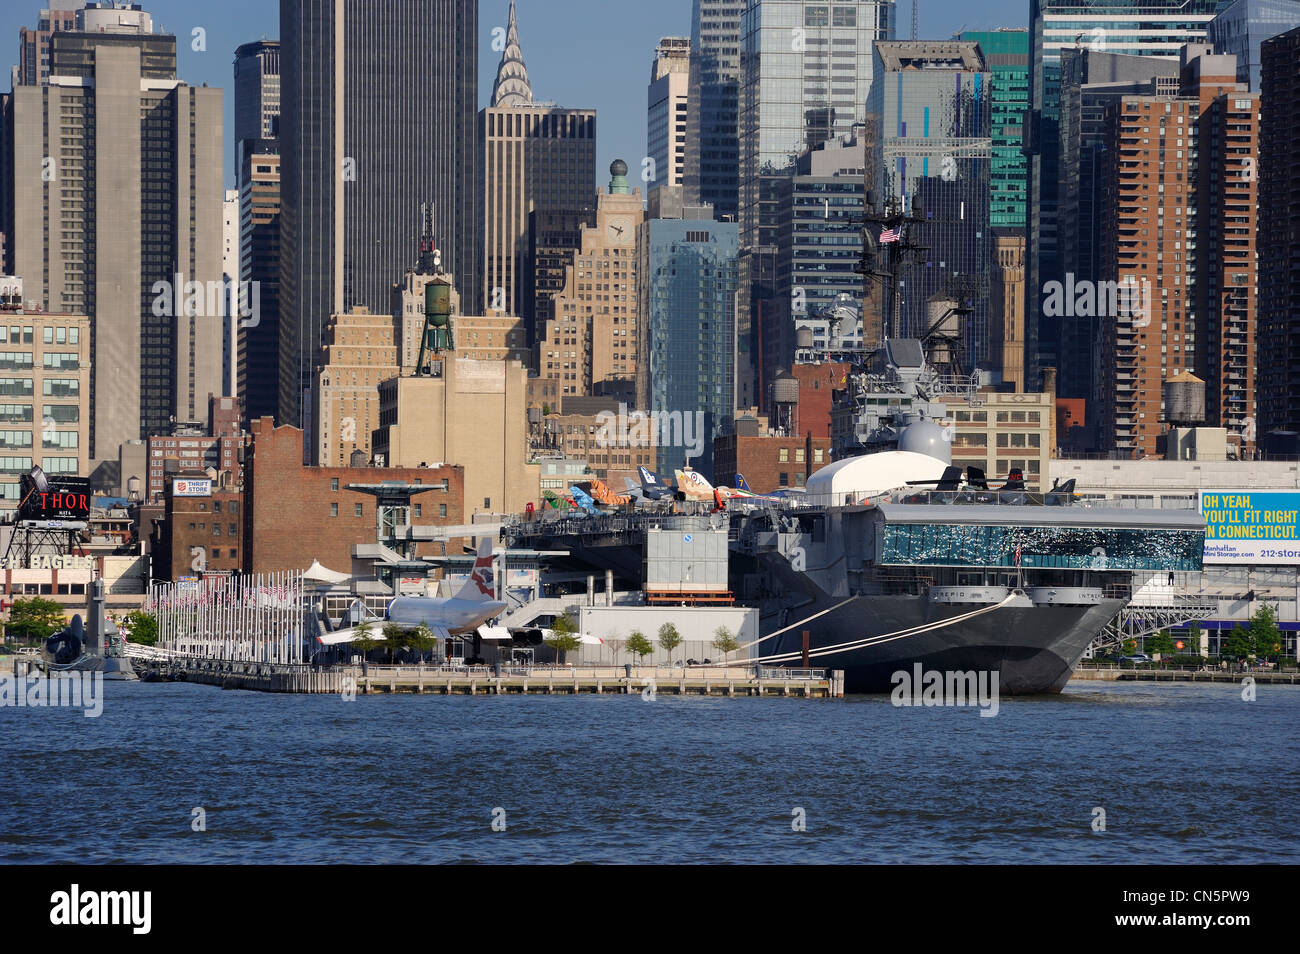 Estados Unidos, Manhattan, Ciudad de Nueva York, el portaaviones USS Intrepid CV-11 al museo Intrepid, ubicado en el Muelle 86 Foto de stock